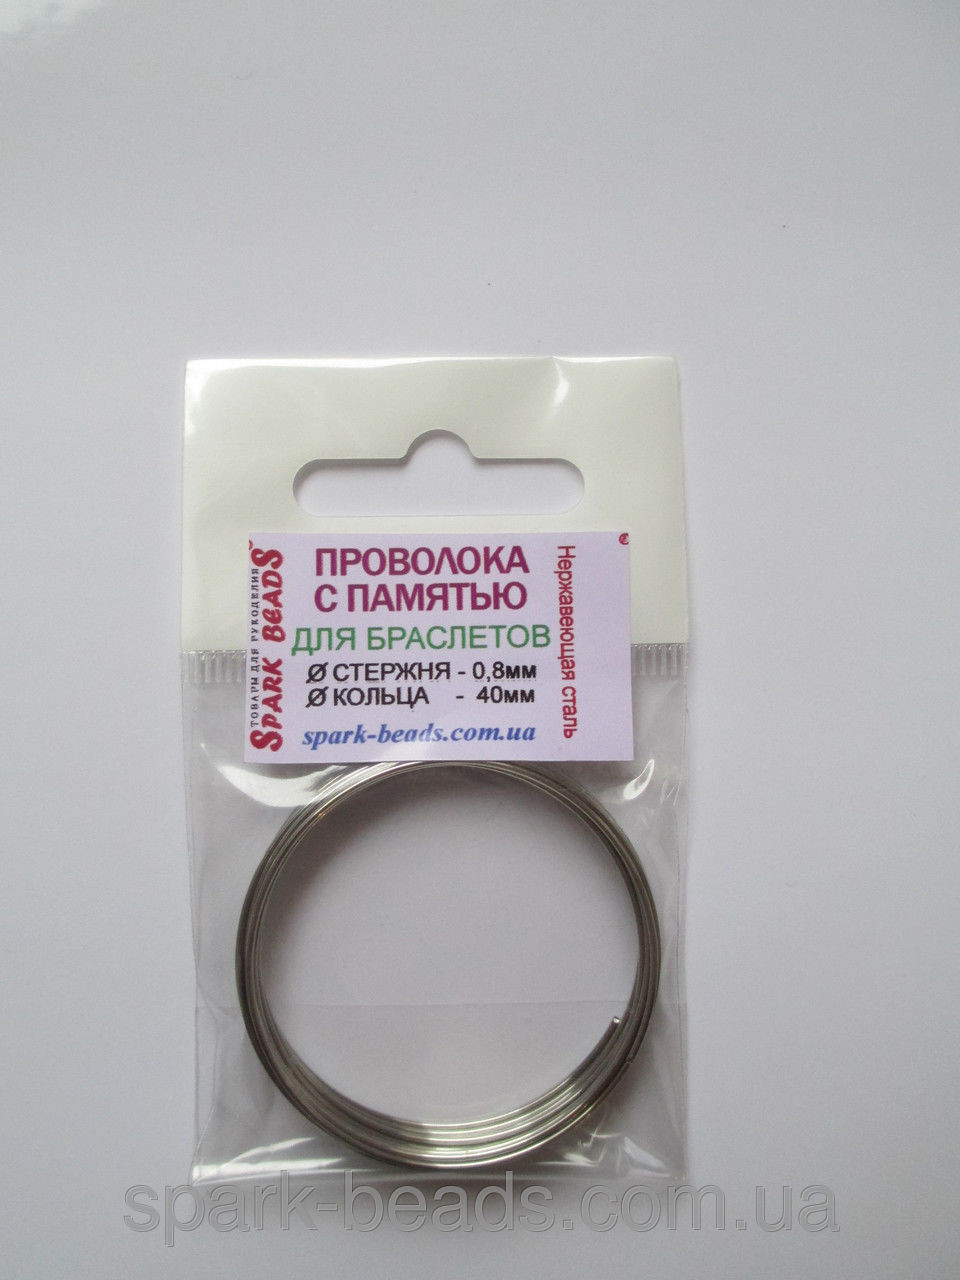 Проволока с памятью цвет серебро, диаметр кольца 40 мм, диаметр стержня проволоки 0,8 мм